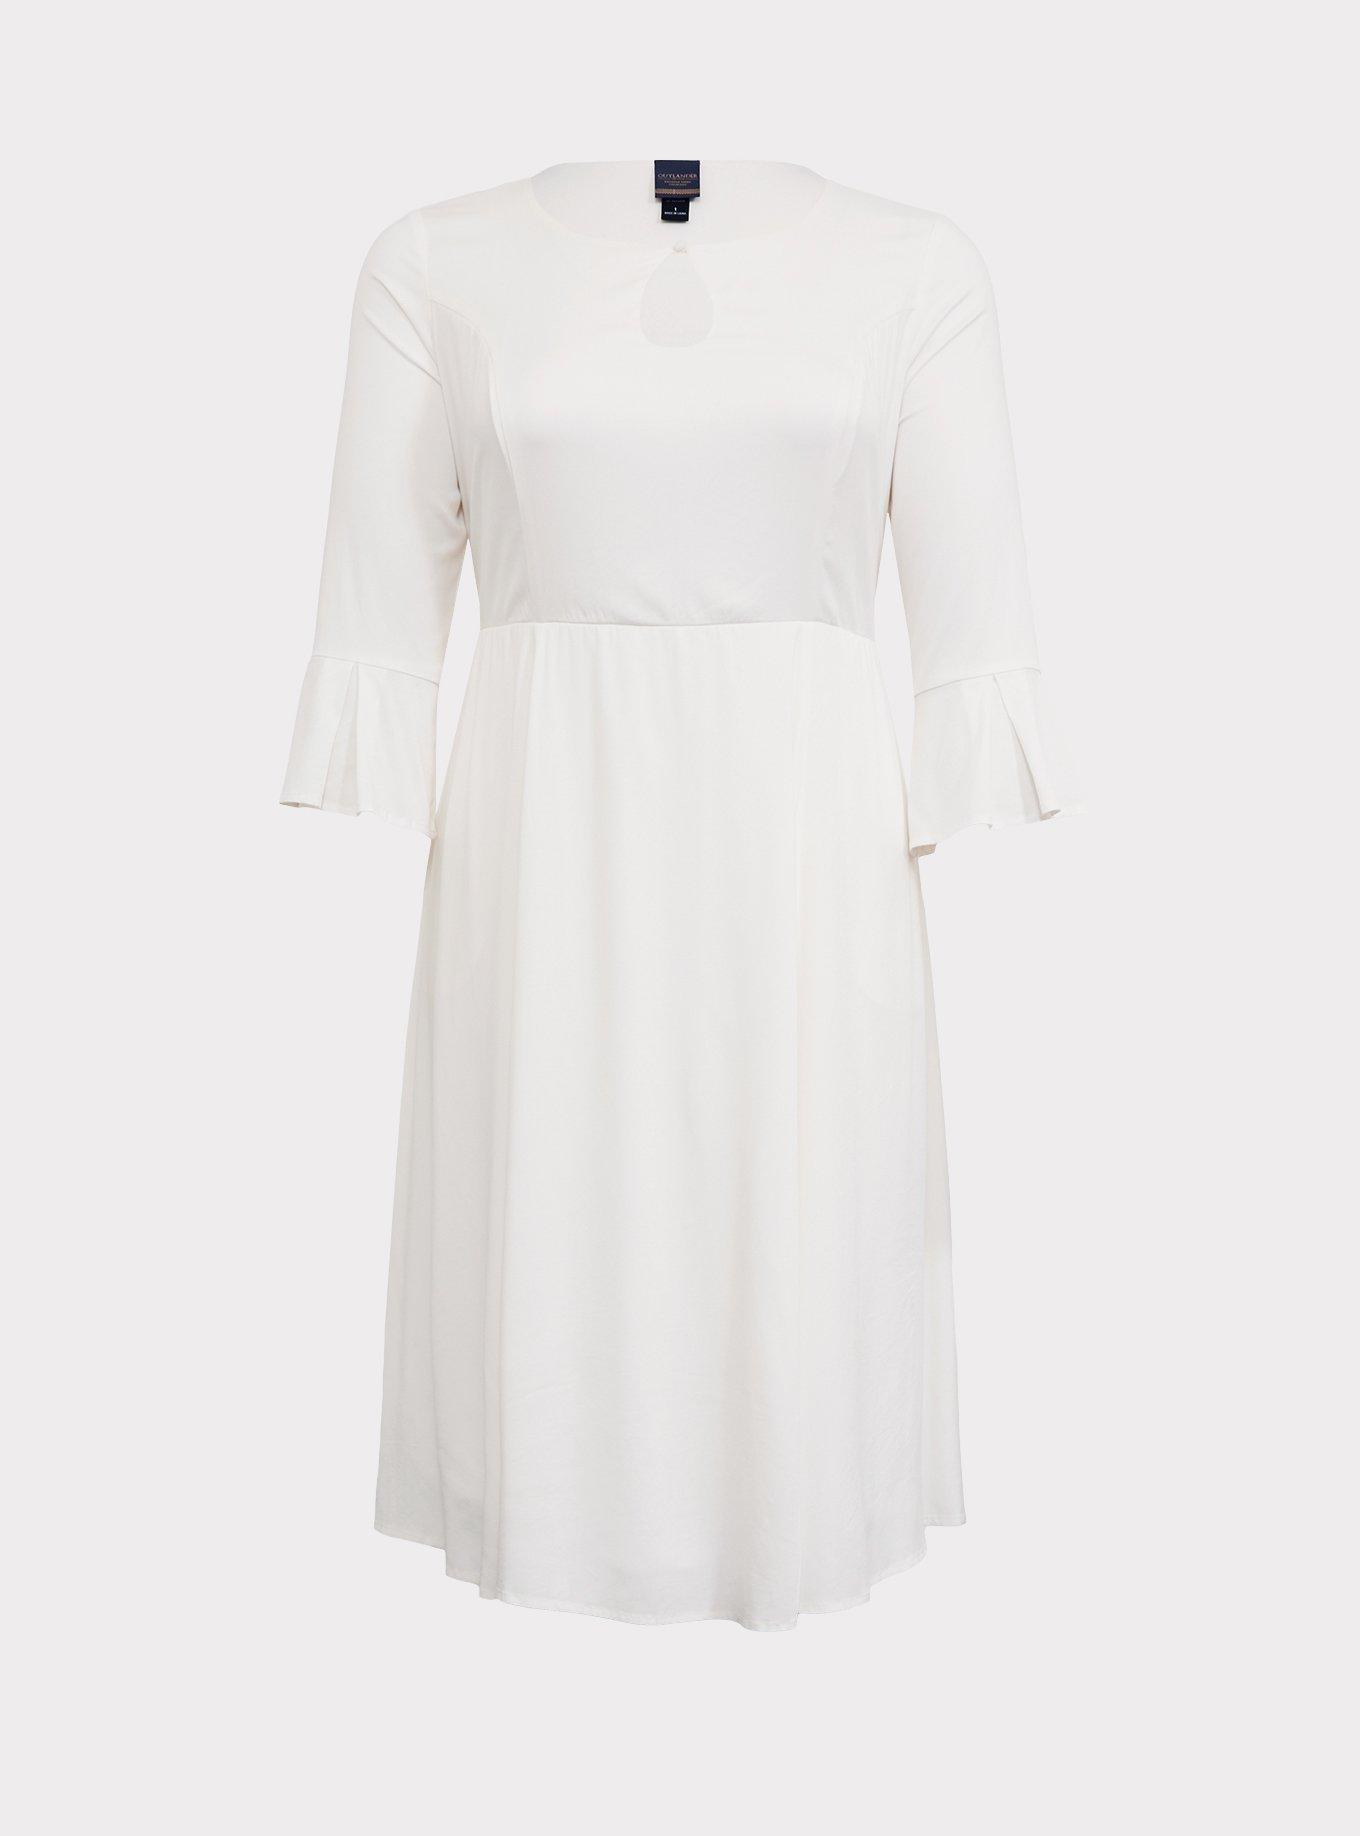 Plus Size - Outlander Claire Ivory Keyhole Dress - Torrid